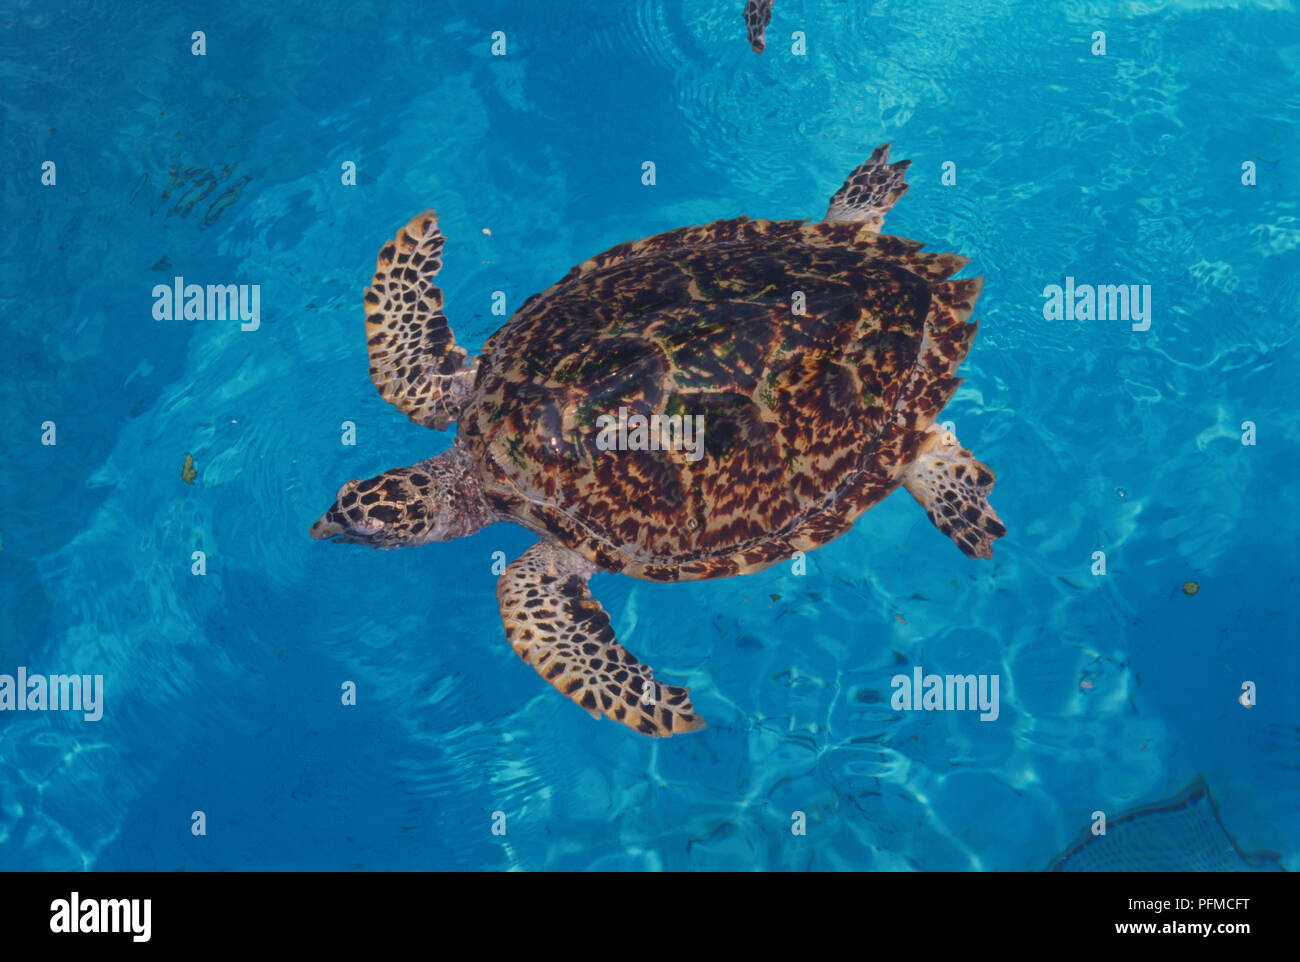 Japan, Okinawa, Memorial Park, Sea Turtle (Chelonioidea) Schwimmen in einem klaren blauen Pool, Blick von oben. Stockfoto